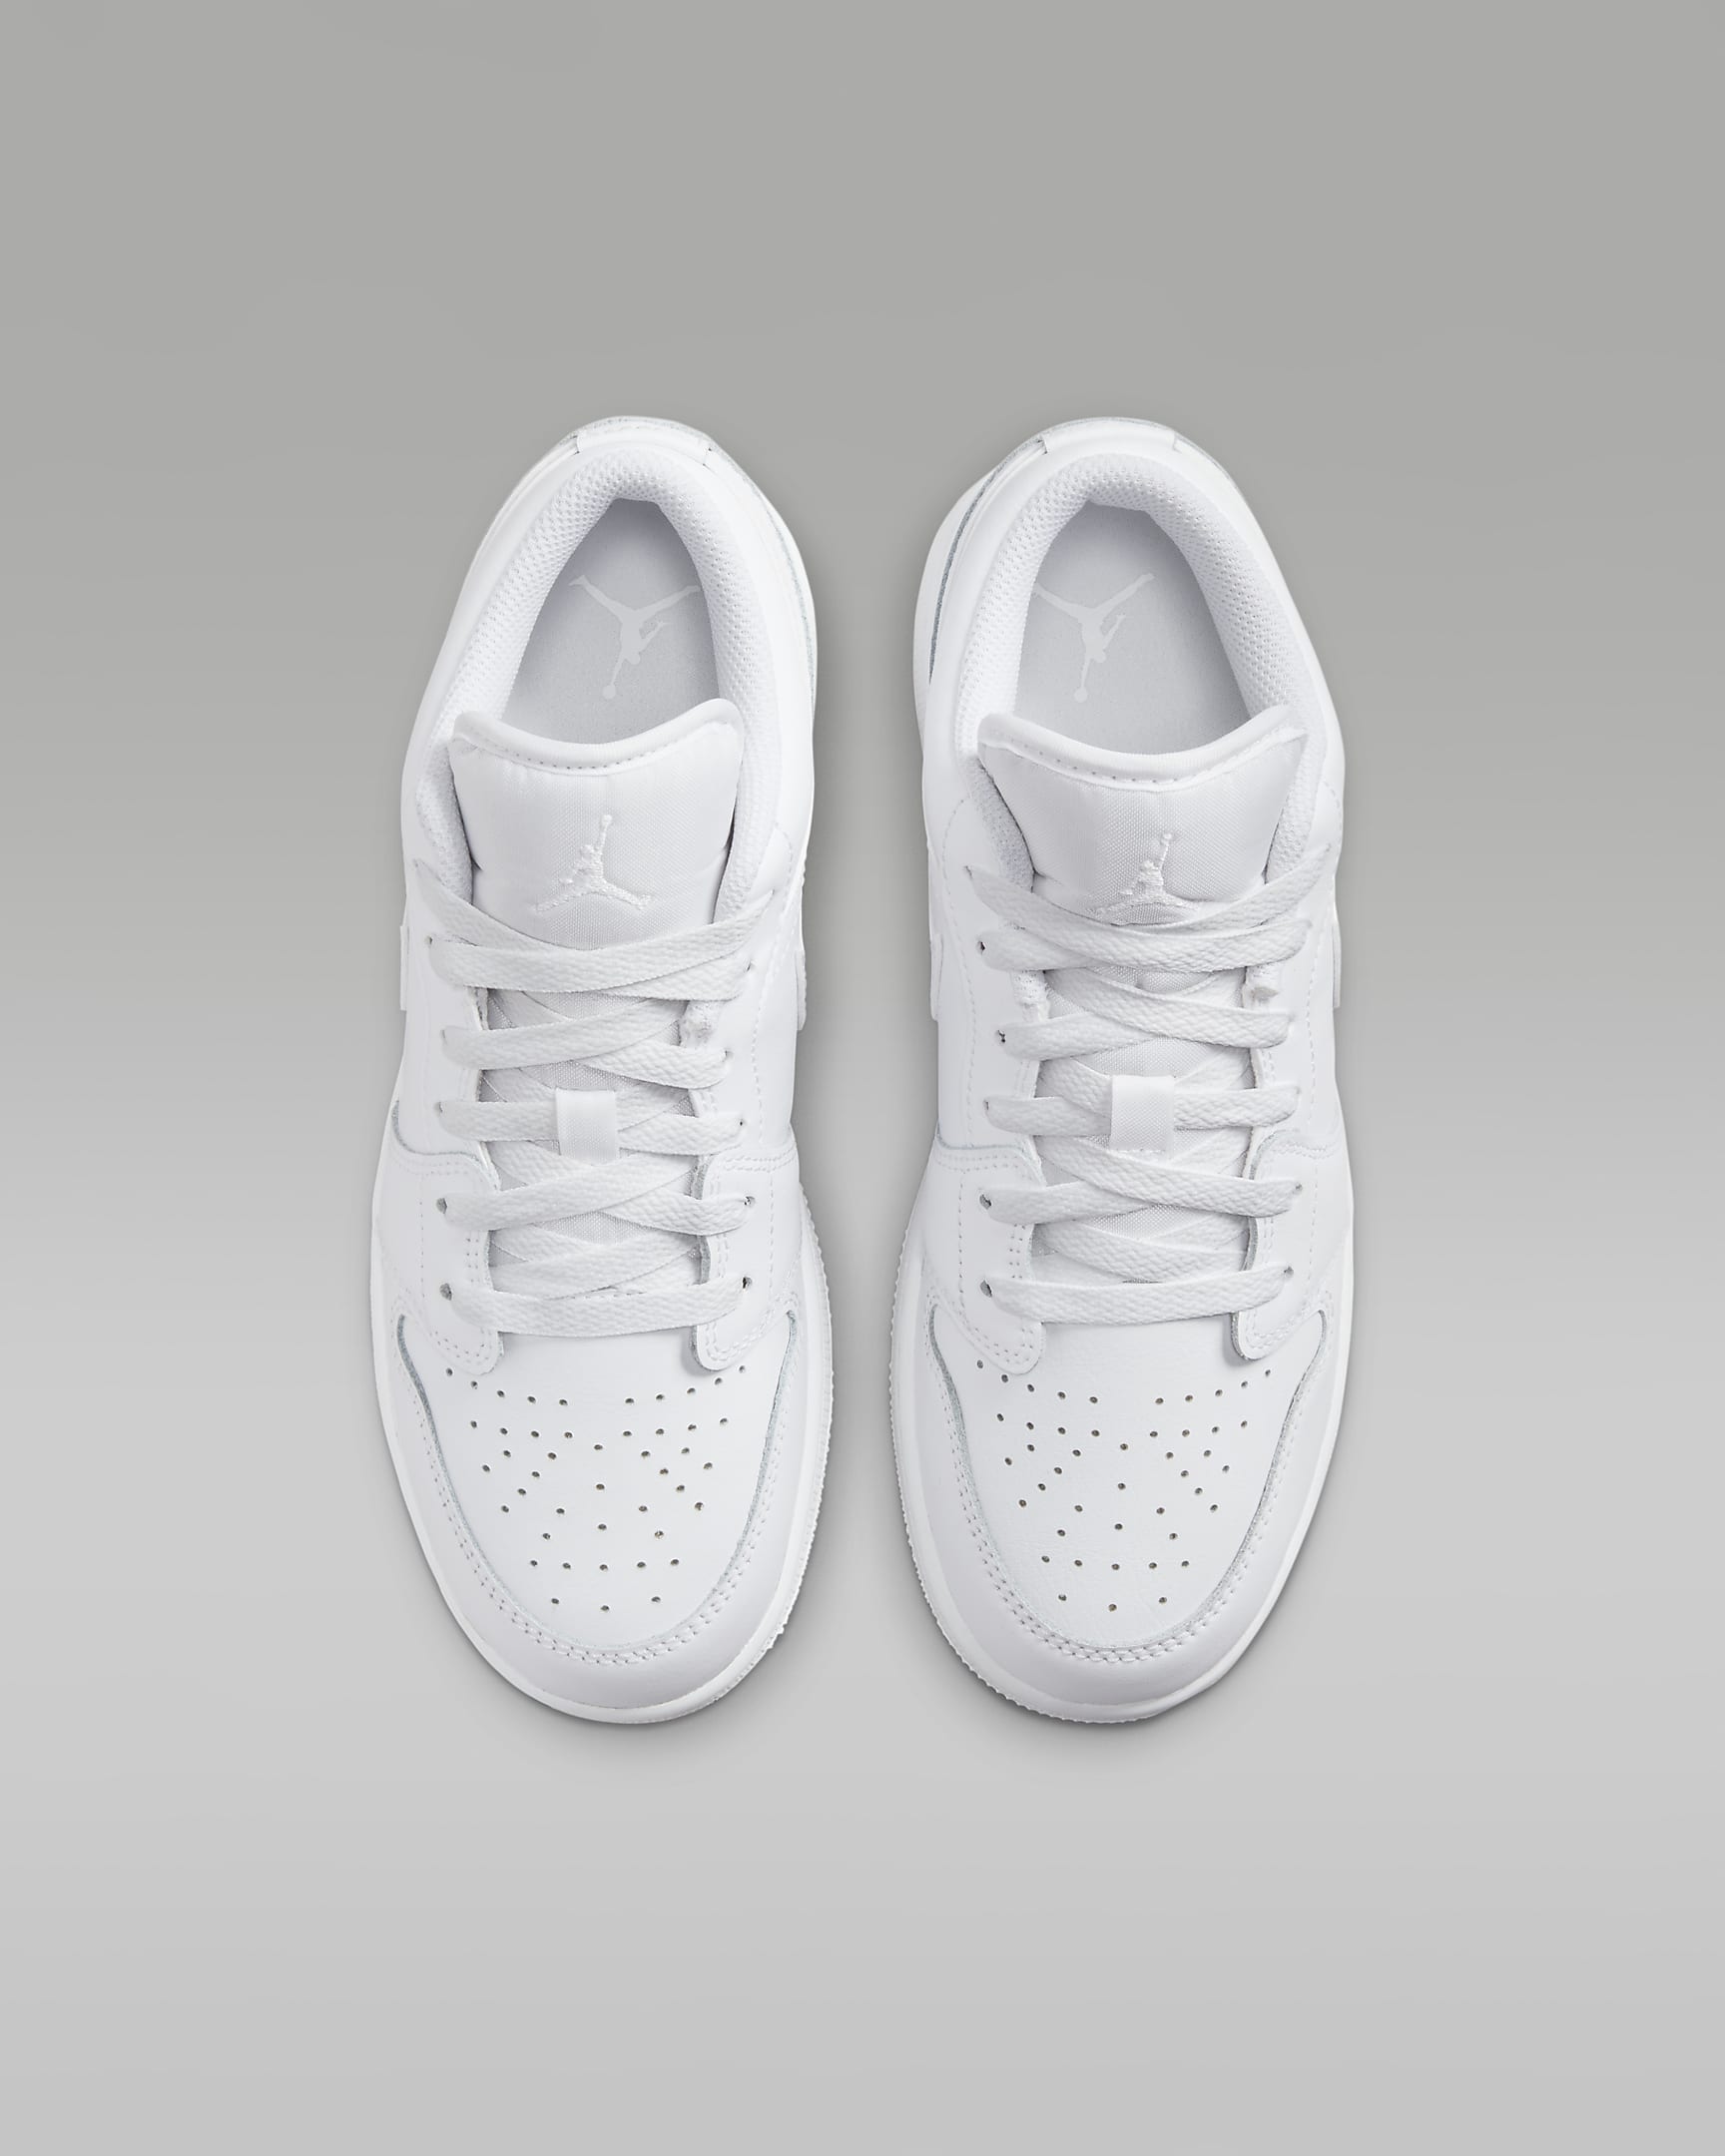 Air Jordan 1 Low Schuh für ältere Kinder - Weiß/Weiß/Weiß